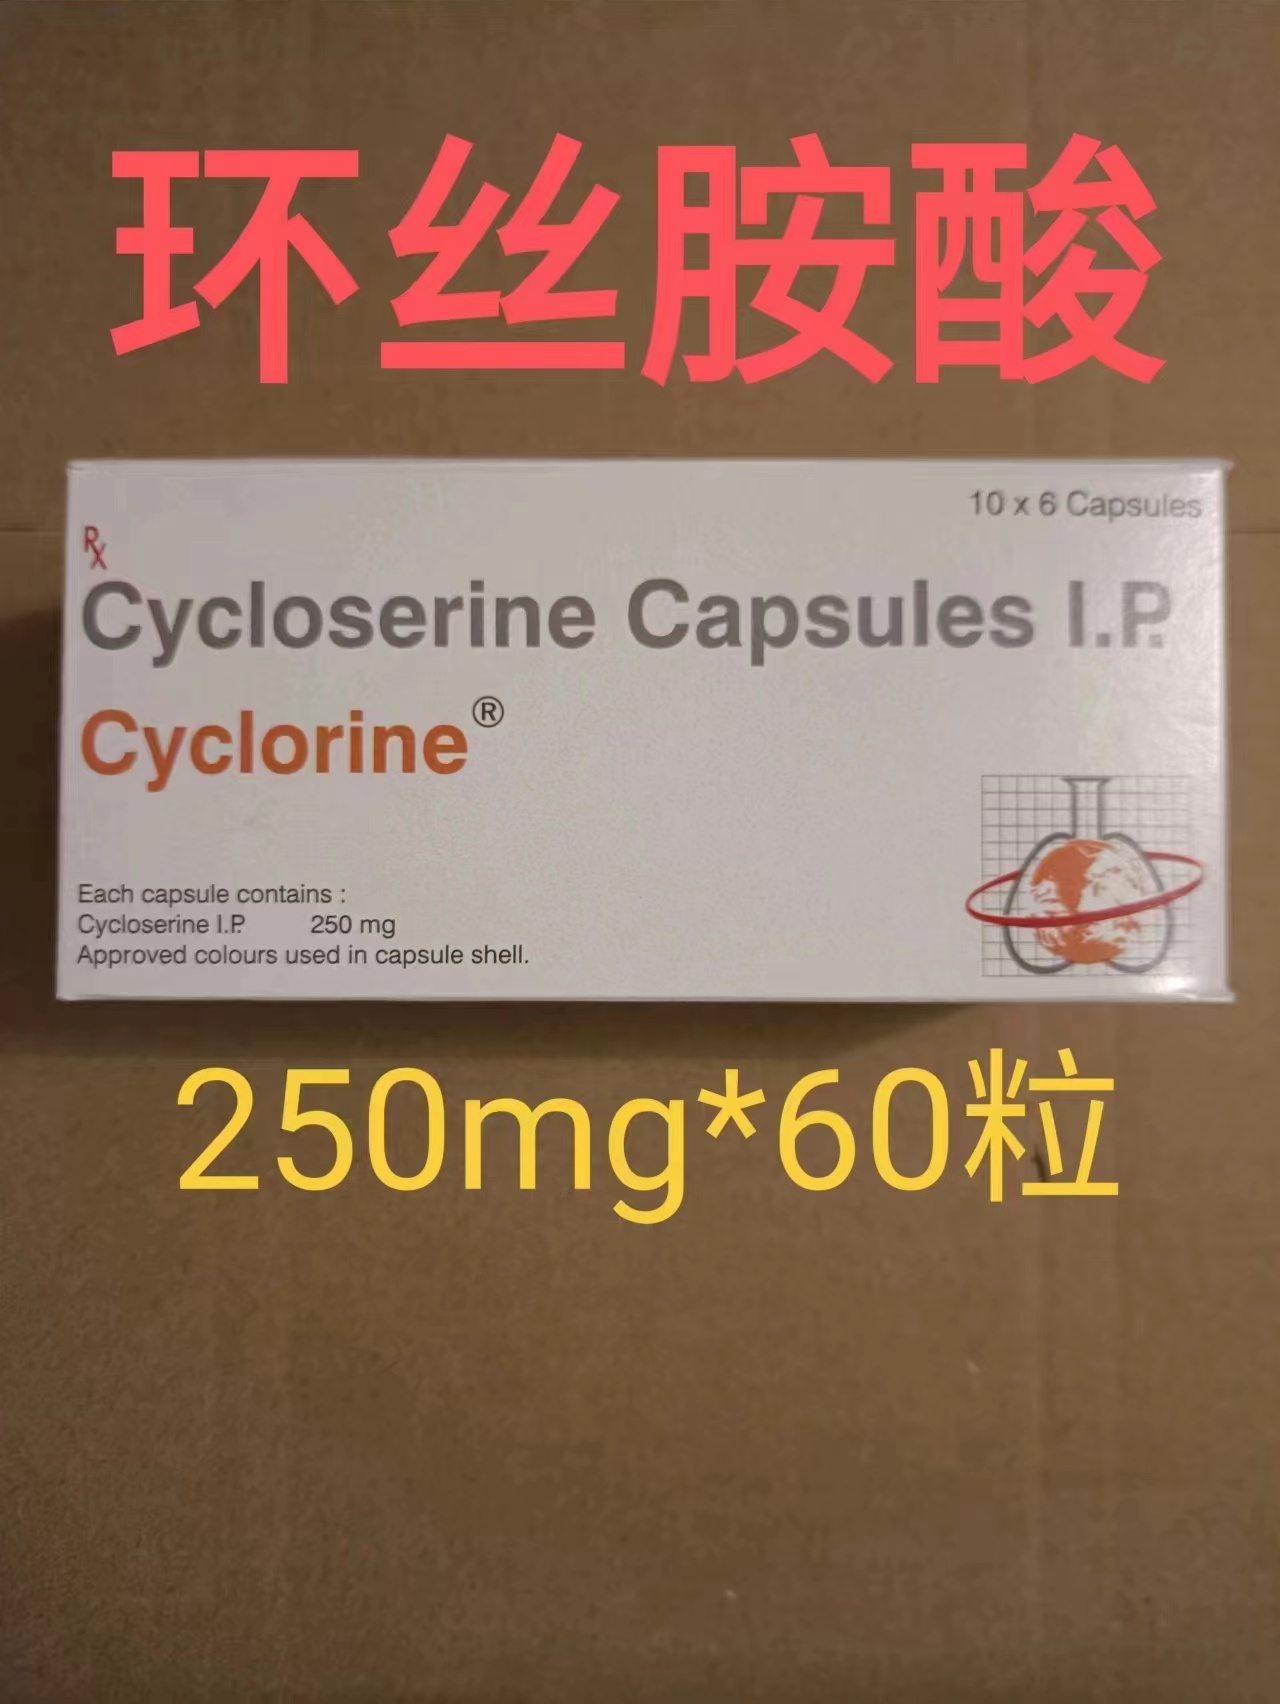 环丝氨酸(Seromycin)Cycloserine的功效、副作用与注意事项